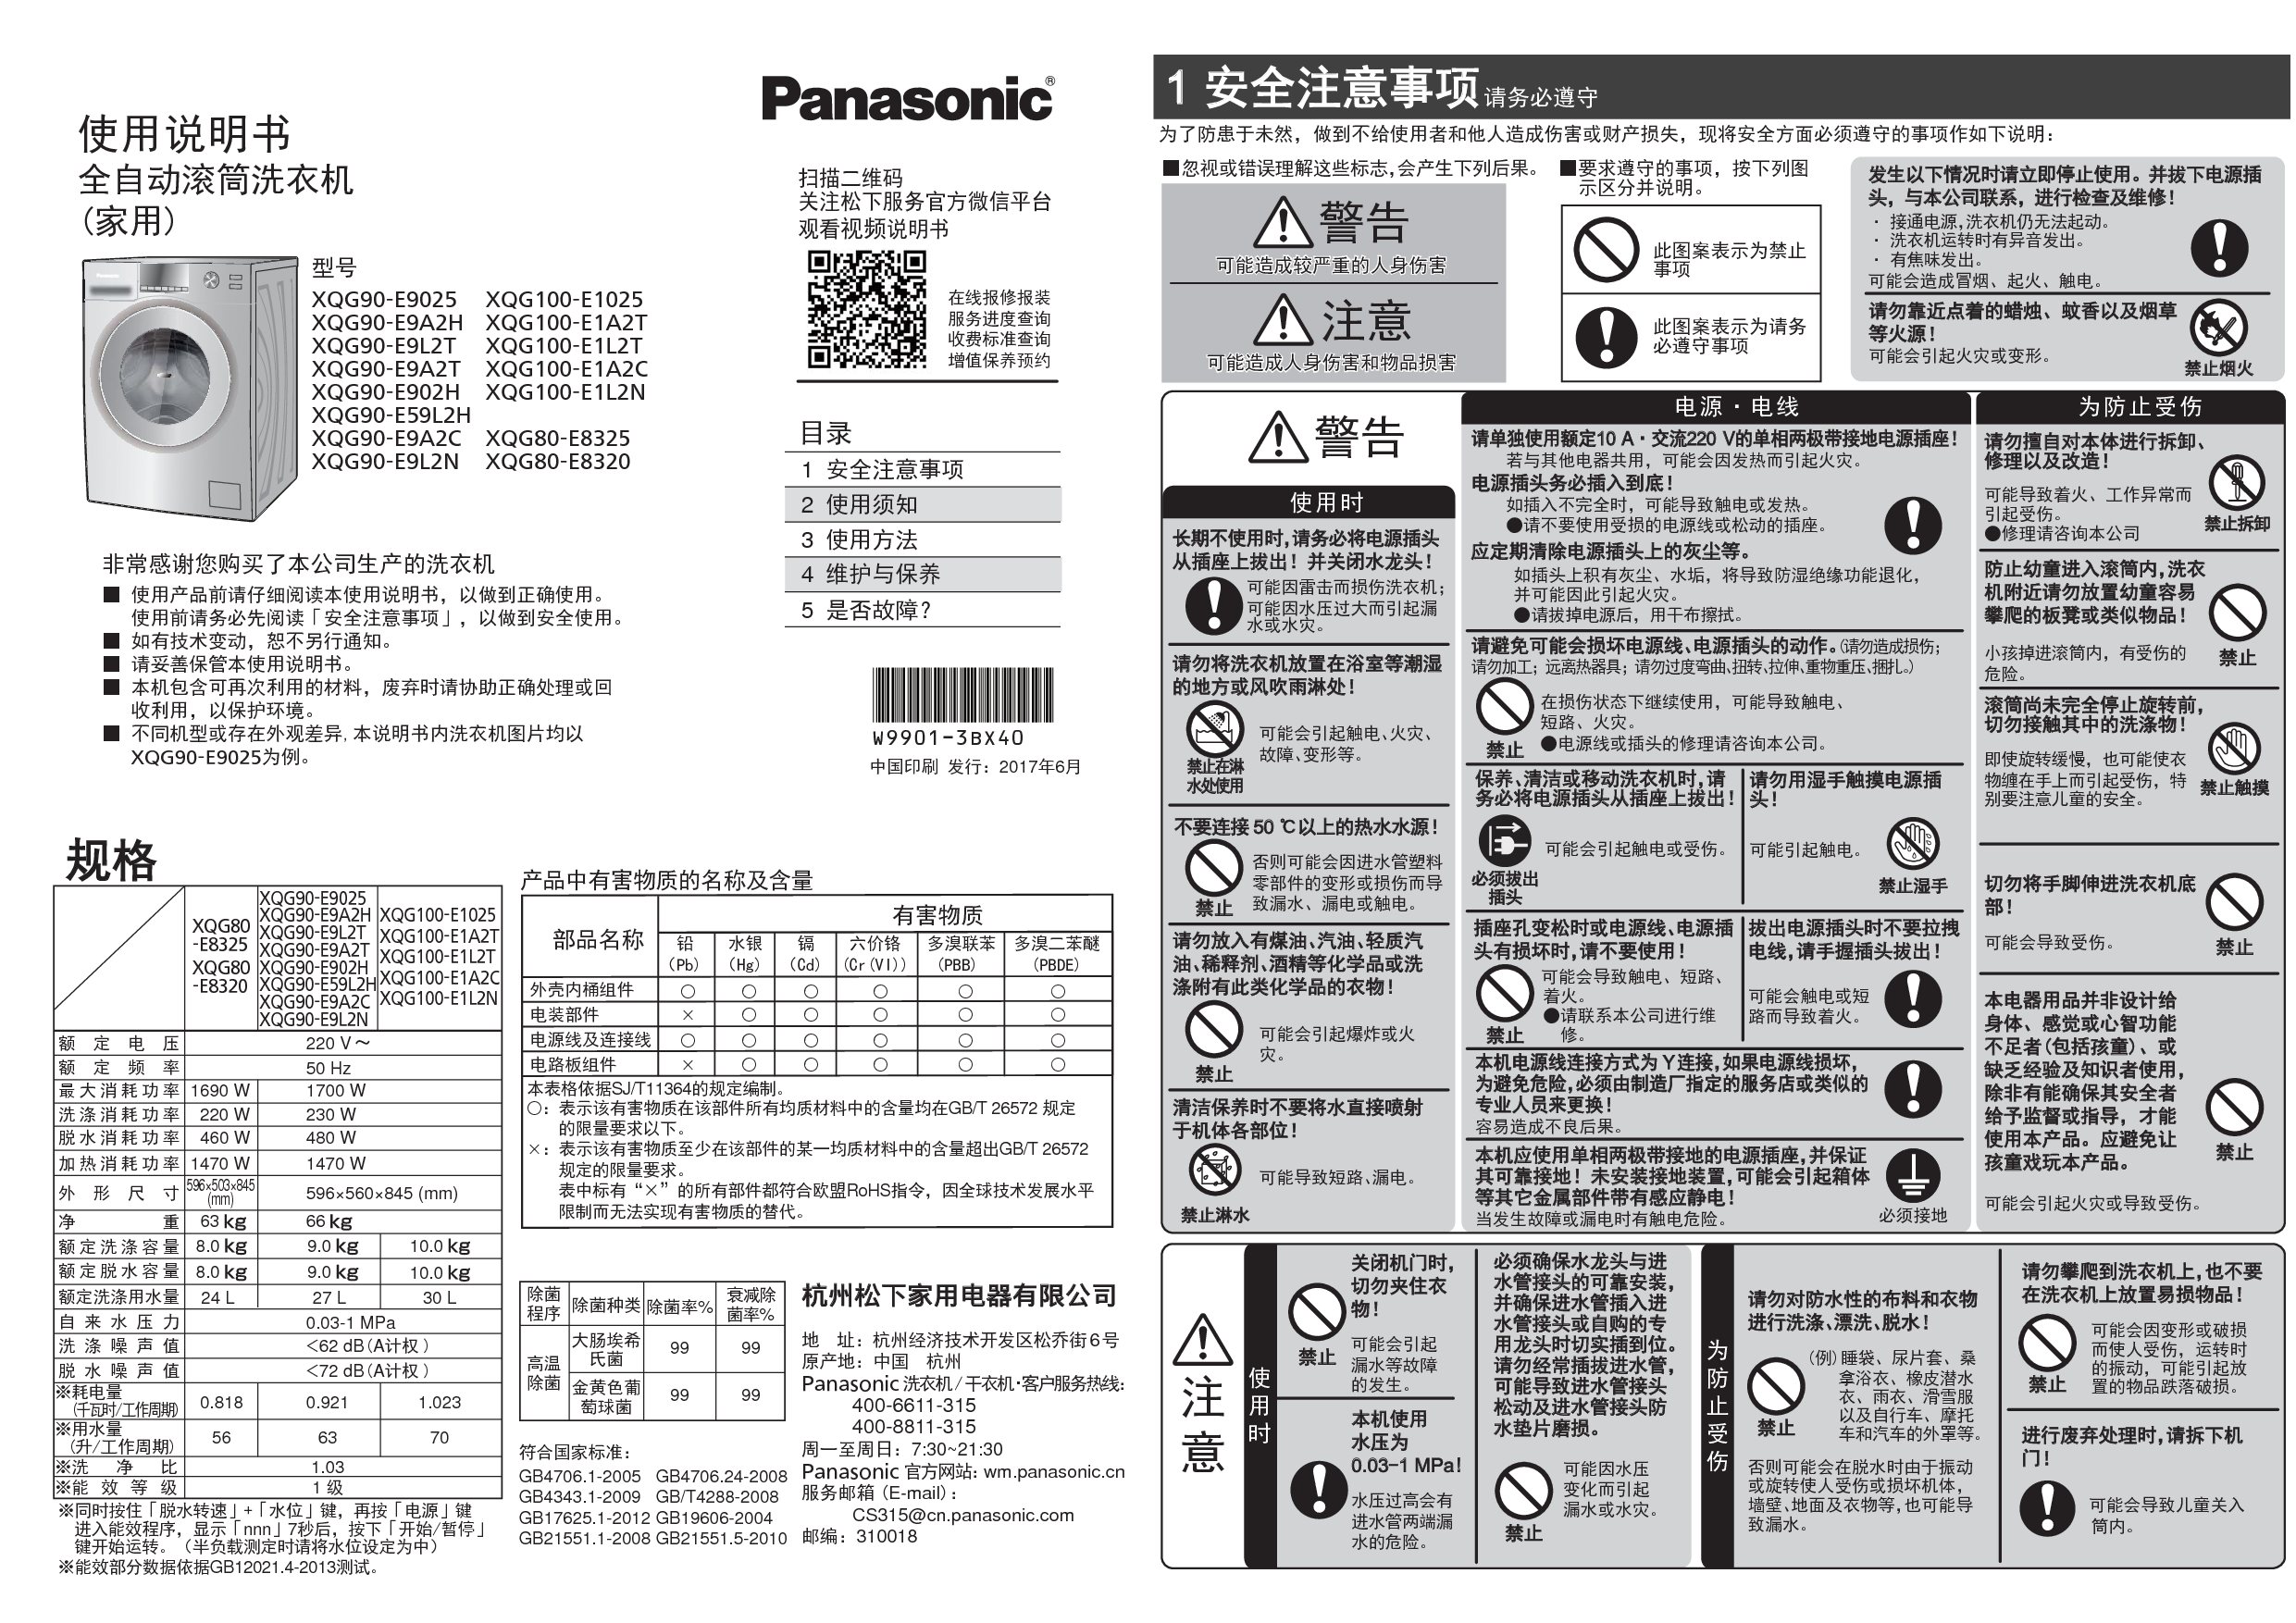 松下 Panasonic XQG100-E1L2N, XQG80-E8320, XQG90-E9A2C 使用说明书 封面